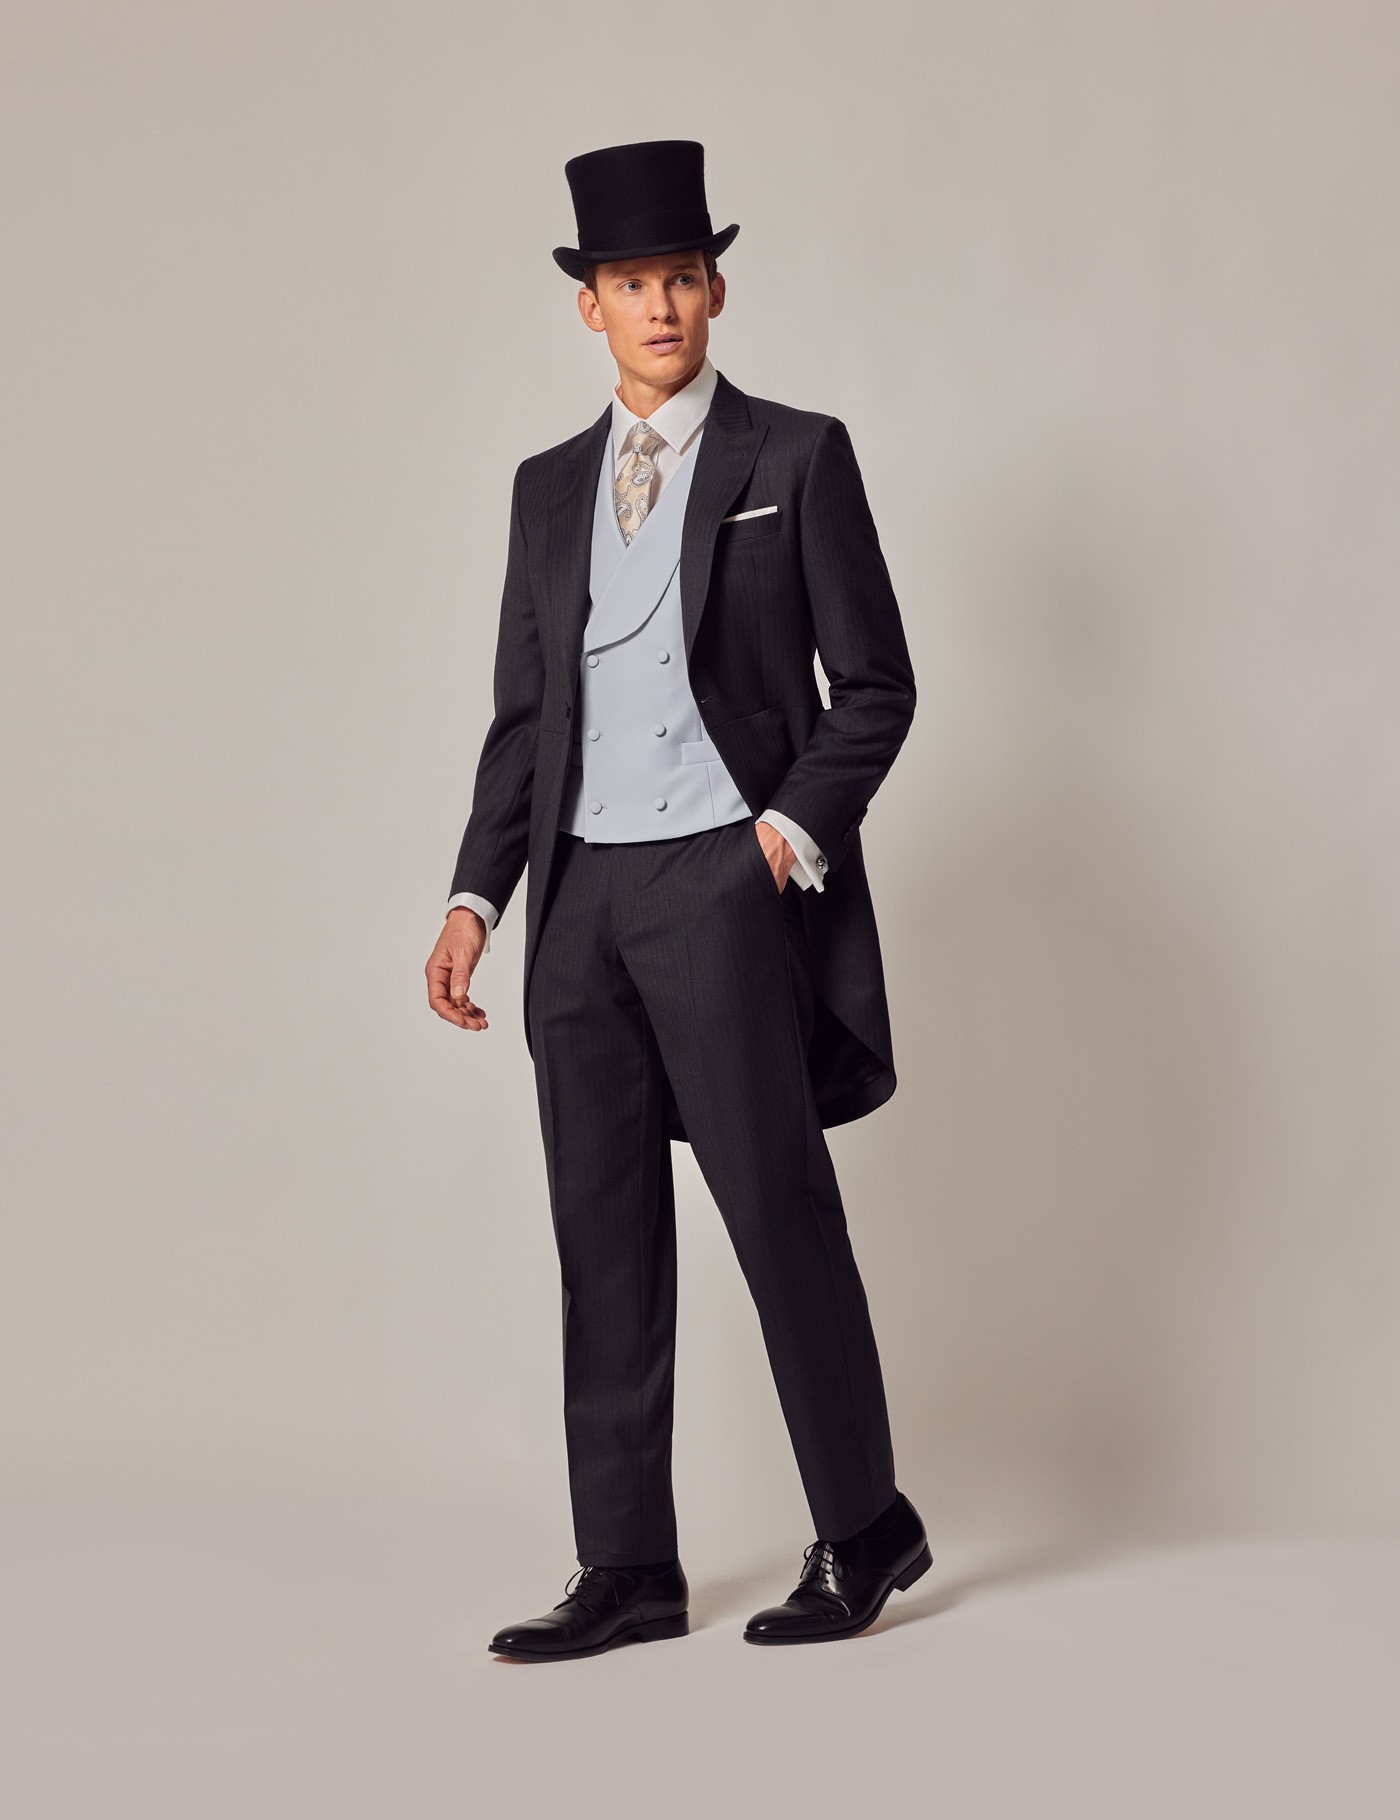 Buy Black Slim-fit Italian Cut Pinstripe Suit Men Suit for Men 3 Piece  Stripe Party Suit Black Wedding Suit Black Slim-fit Striped Suit Online in  India - Etsy